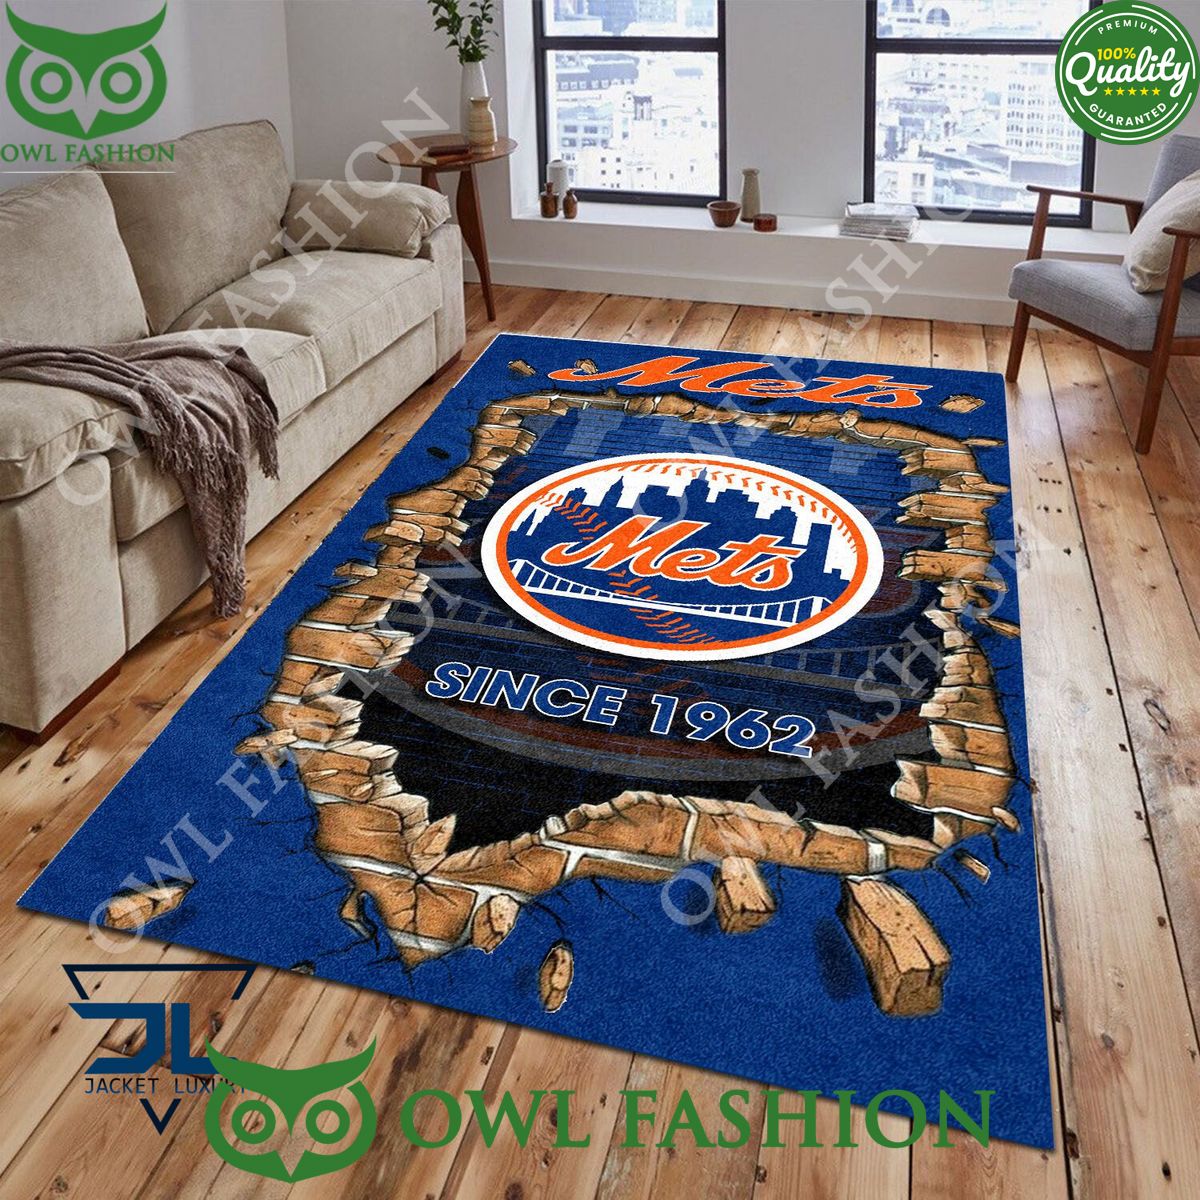 Broken Wall New York Mets MLB Baseball Team Rug Carpet Living Room